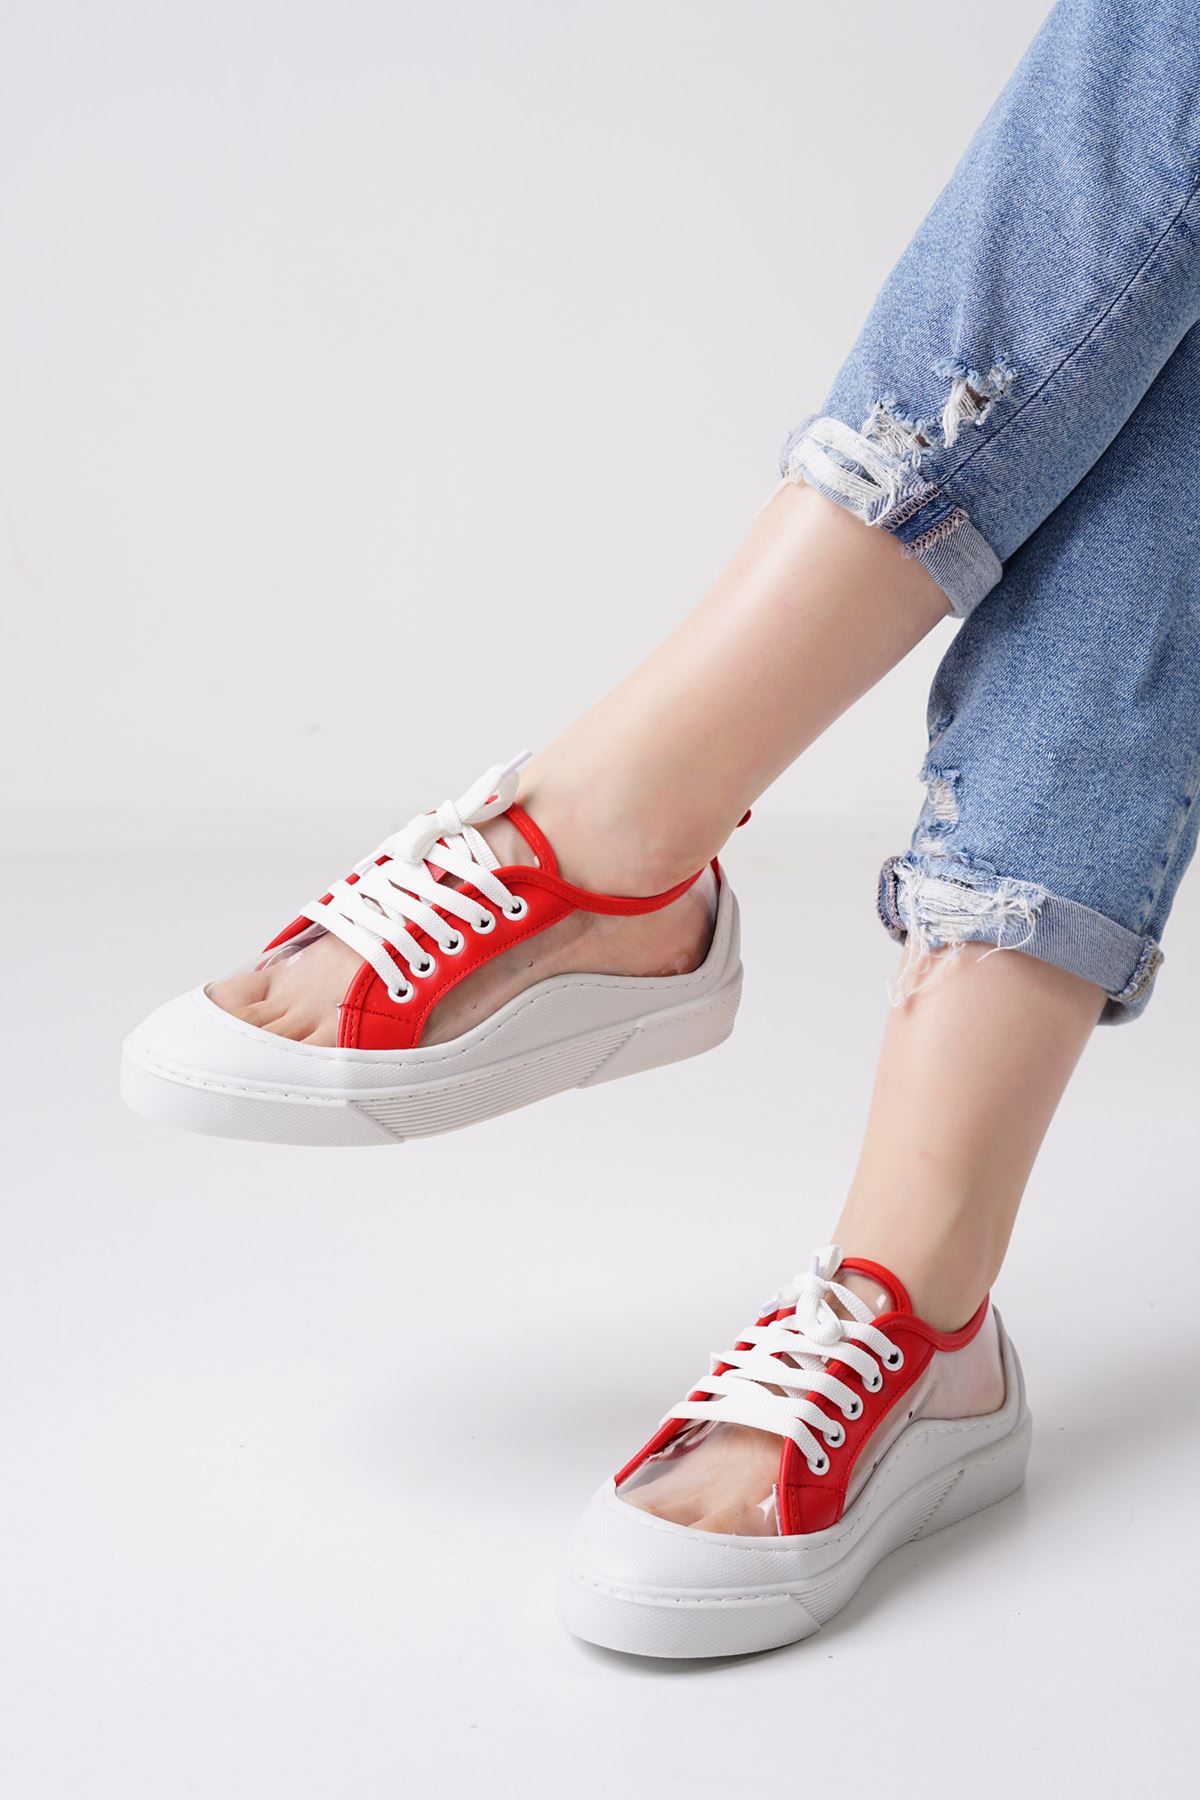 Flufy Beyaz Kırmızı Şeffaf Kadın Spor Ayakkabı